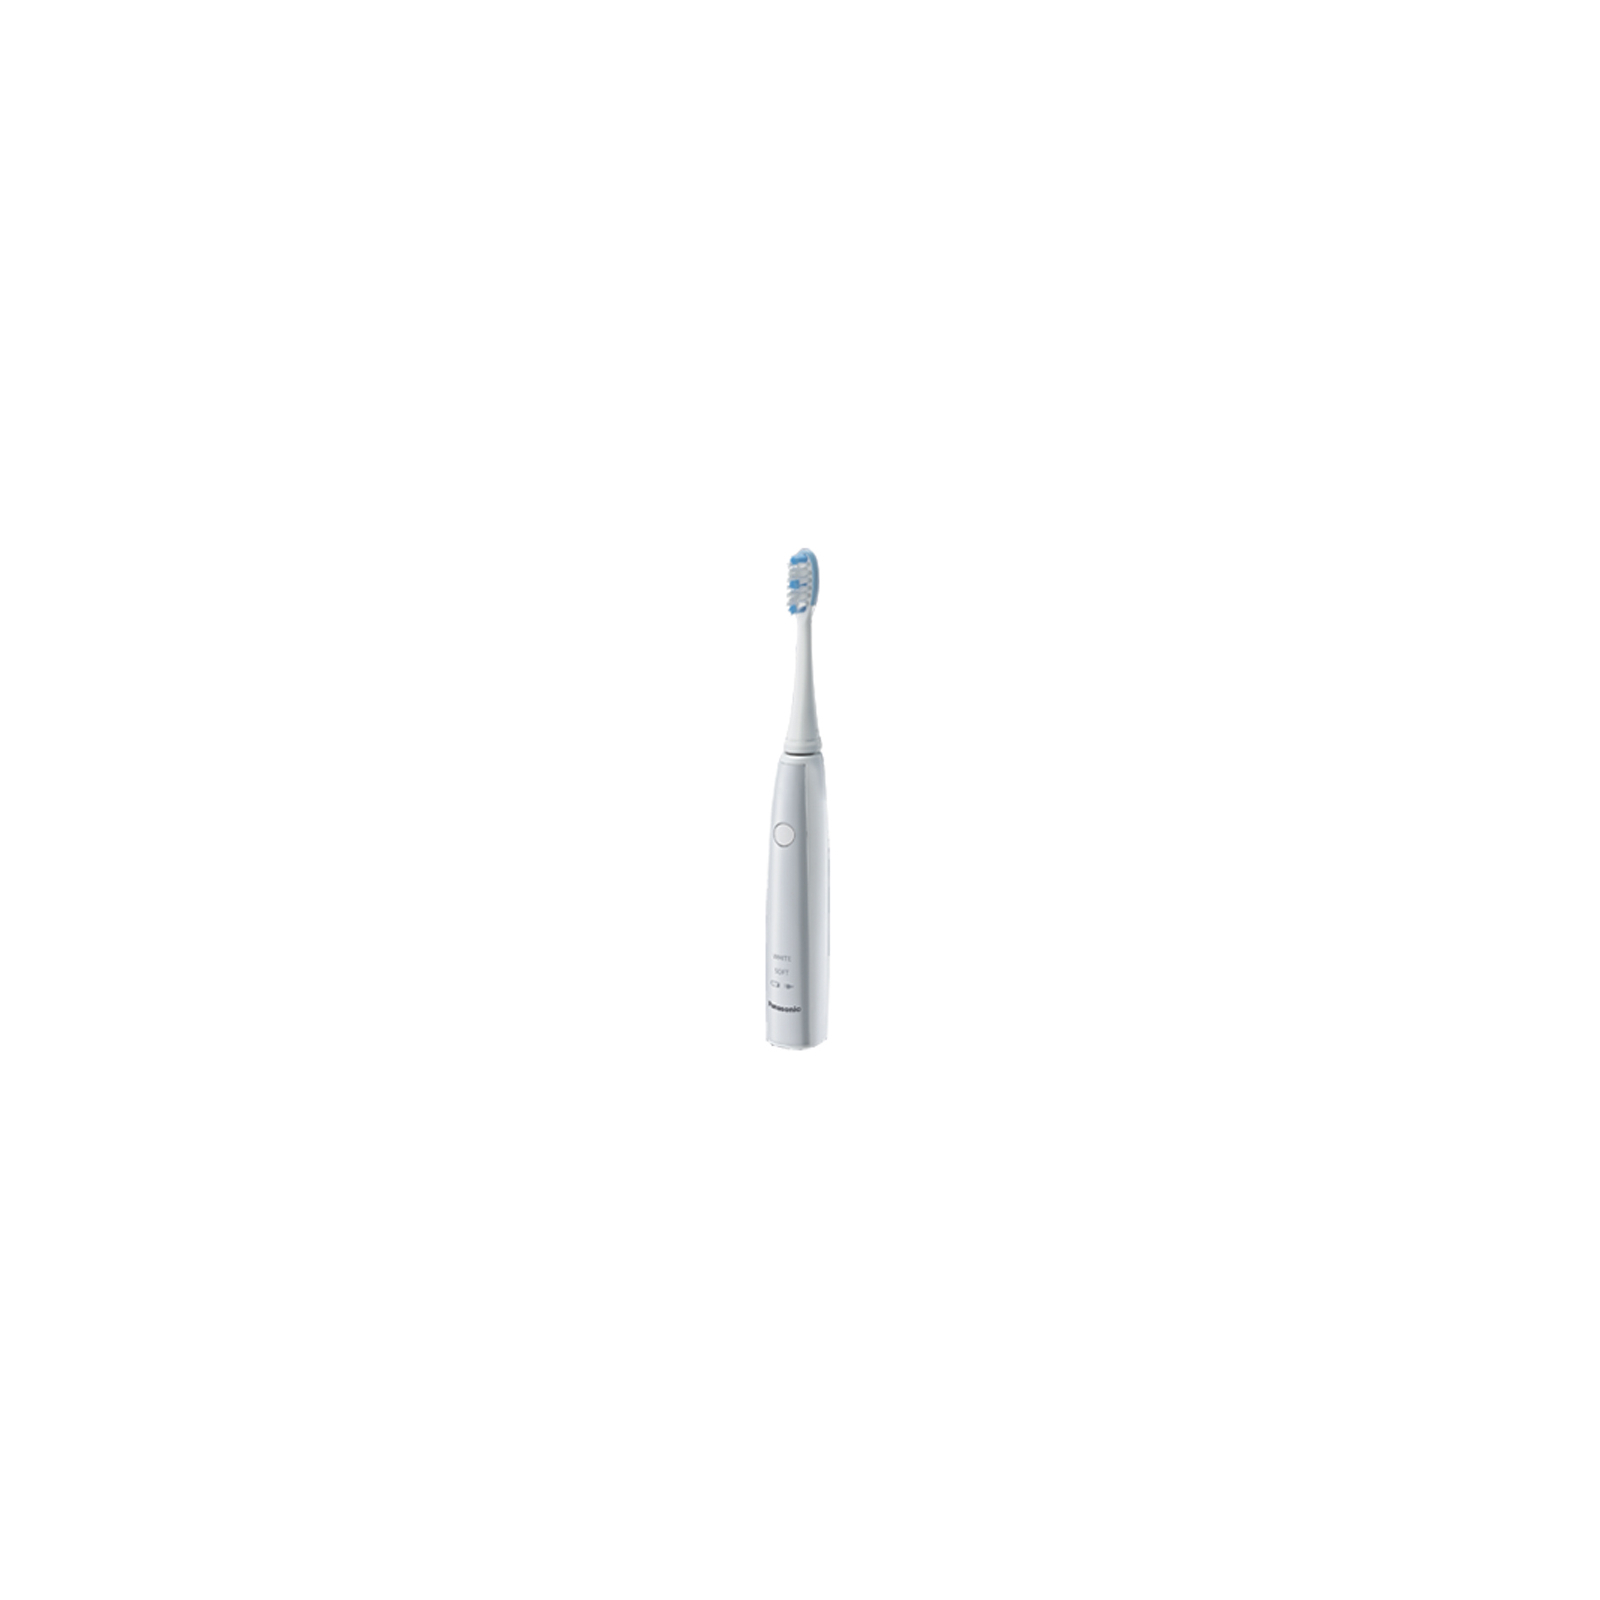 Электрическая зубная щетка Panasonic EW-DL82-W820